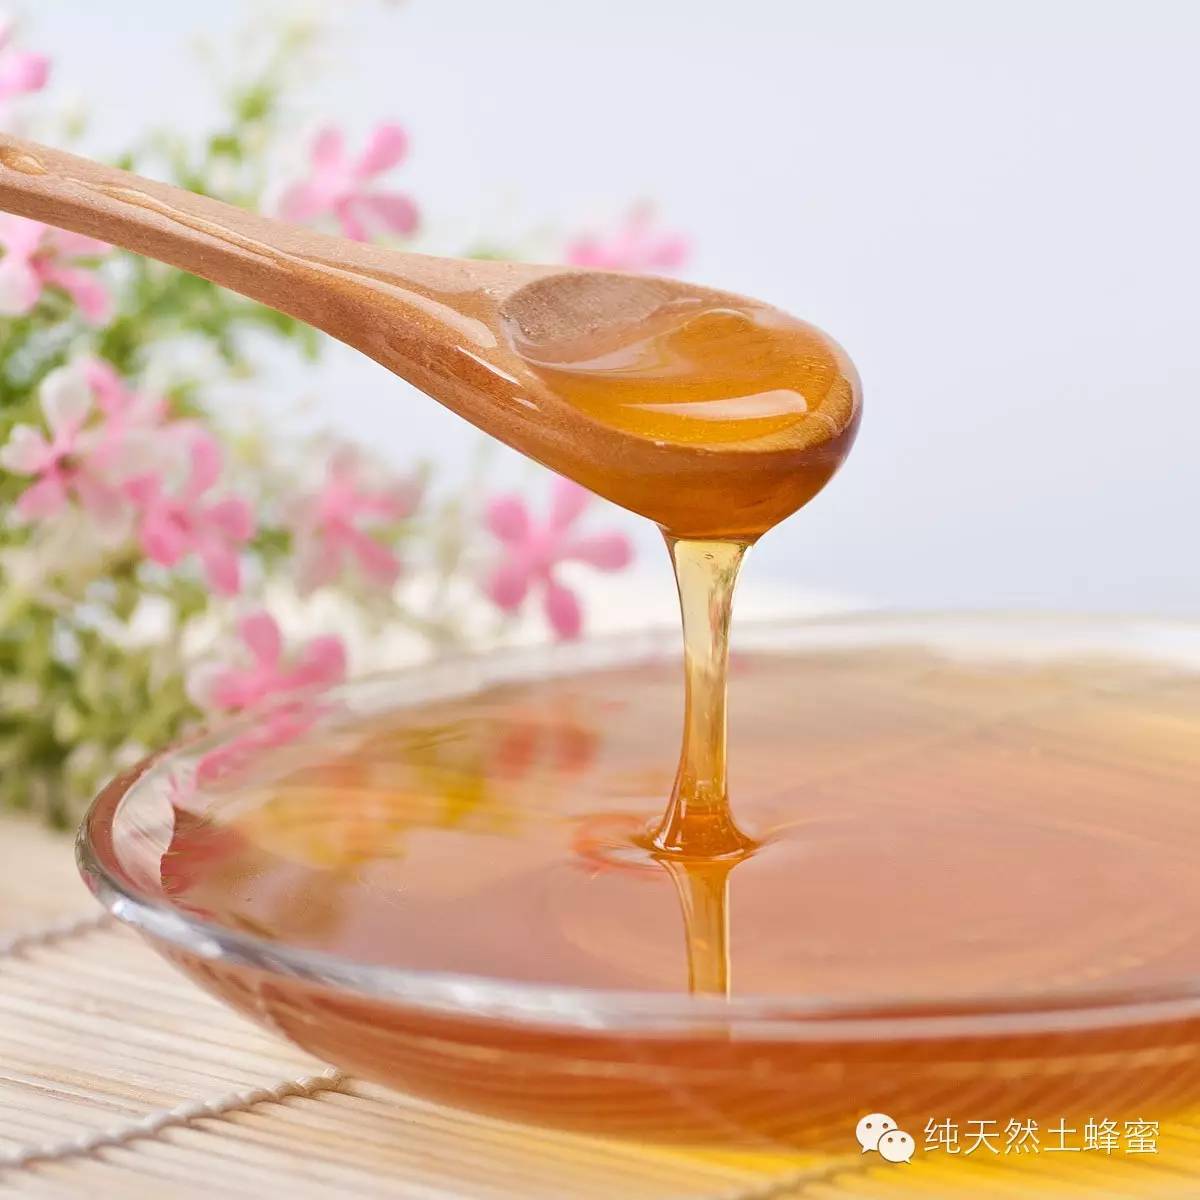 用蜂蜜代替转化糖浆 三日蜂蜜减肥法 蜂蜜生姜的功效与作用 麦片里可以加蜂蜜吗 枣花蜂蜜味道